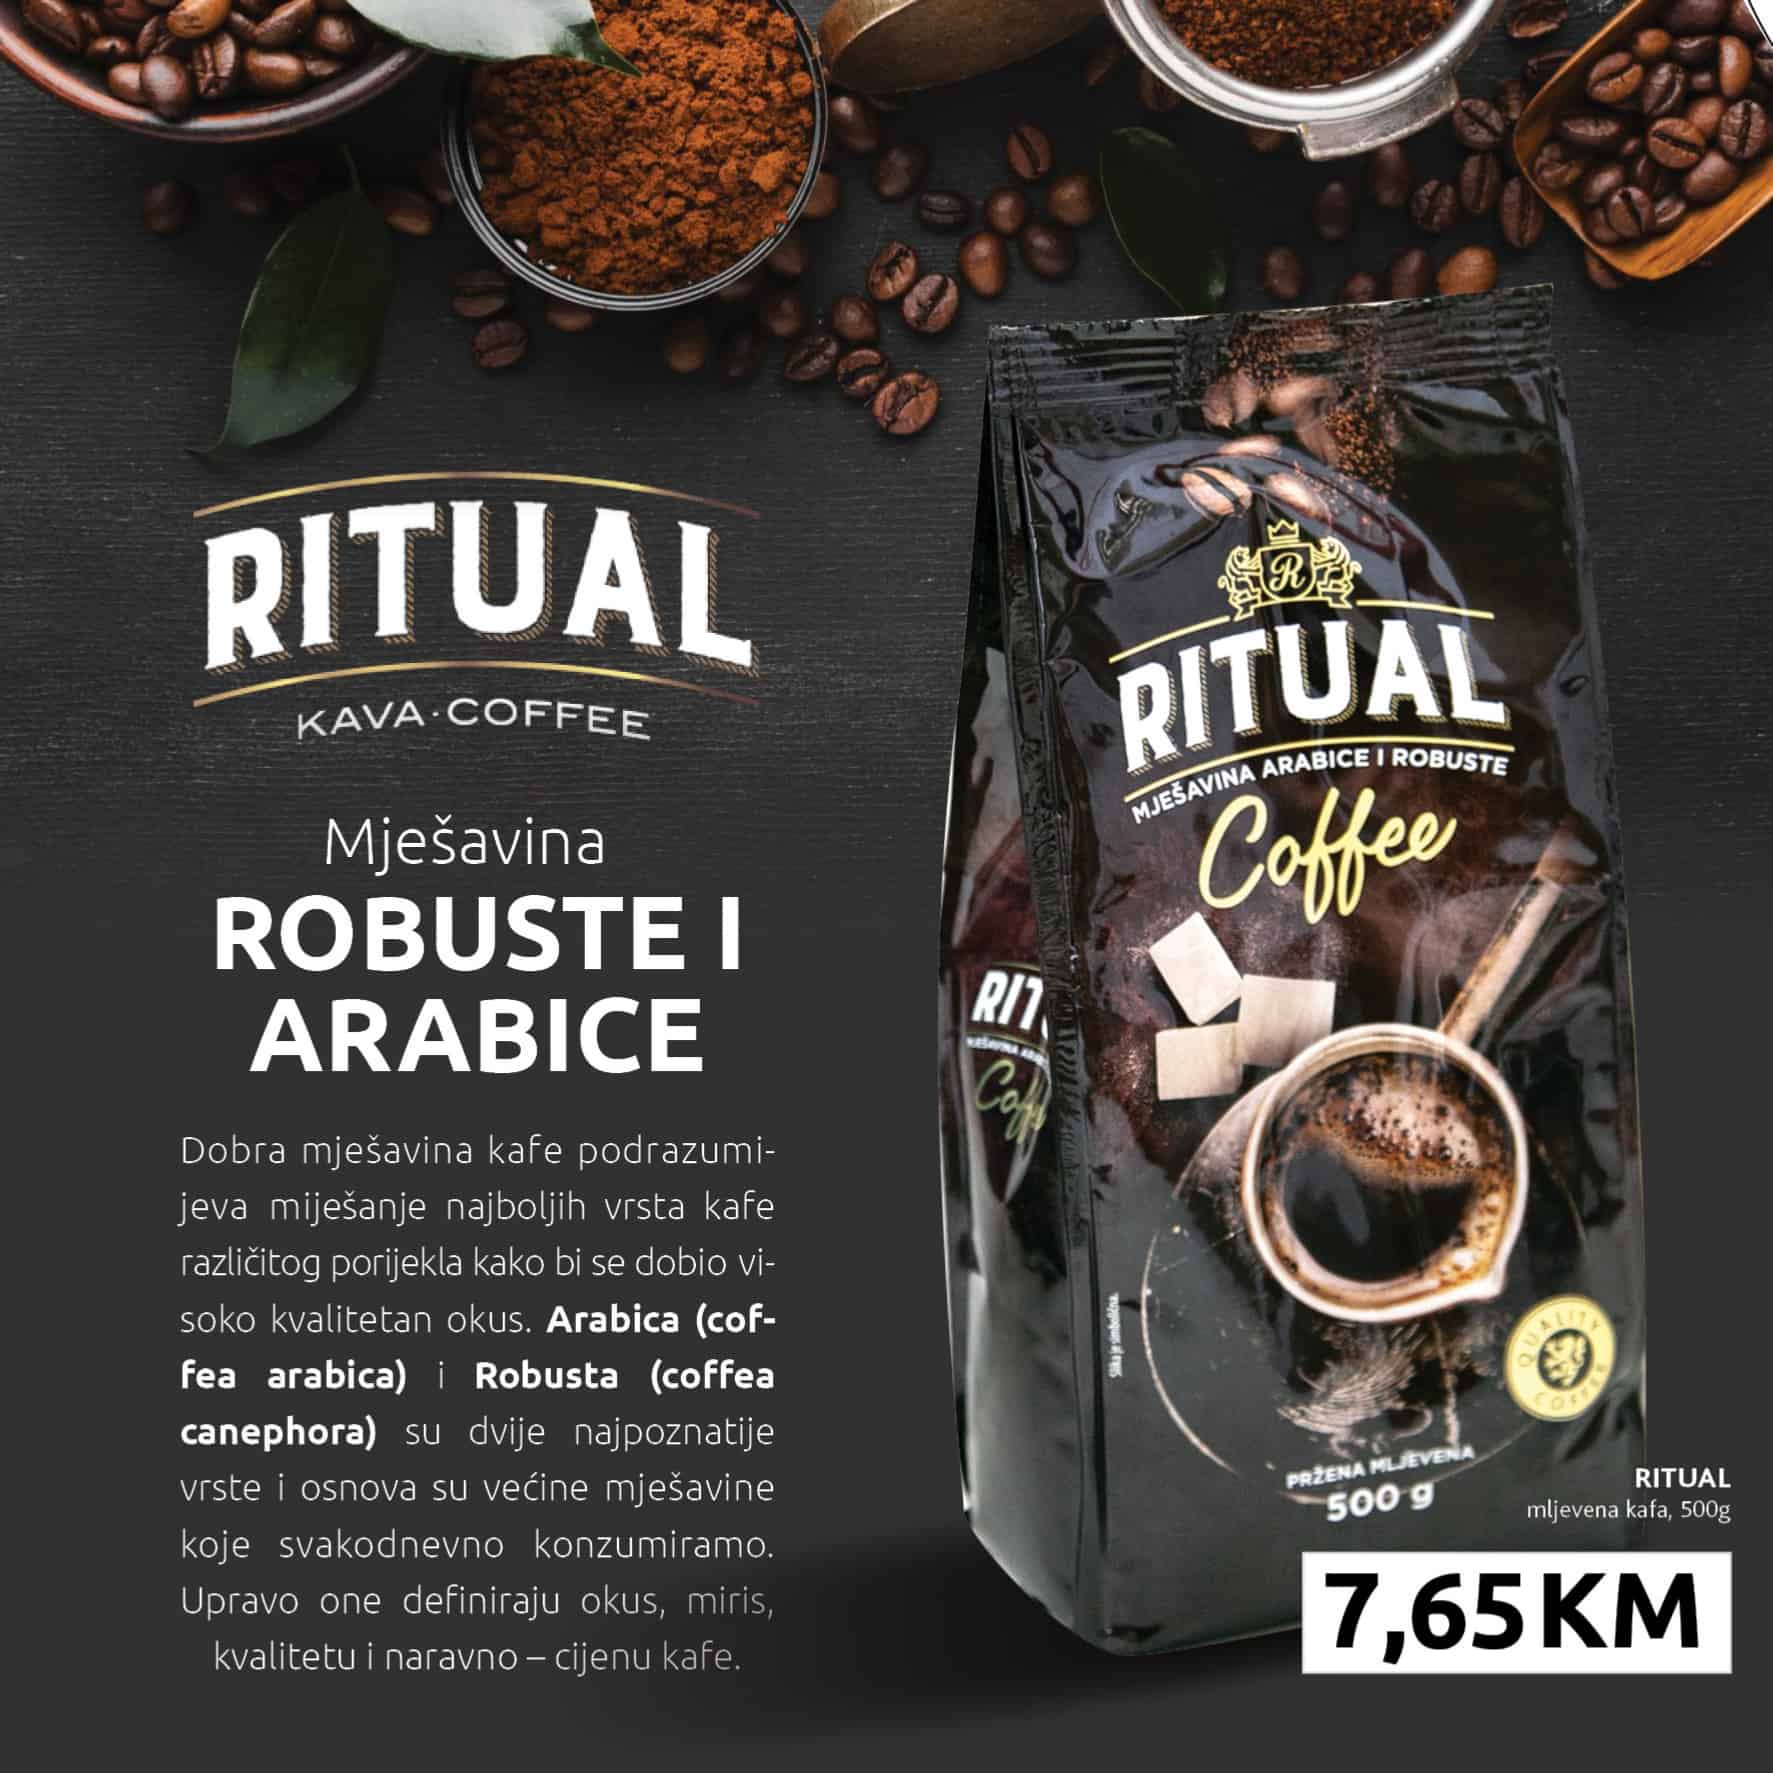 Konzum katalog donosi nam Ritual kafu po cijeni od 7,65 Km!